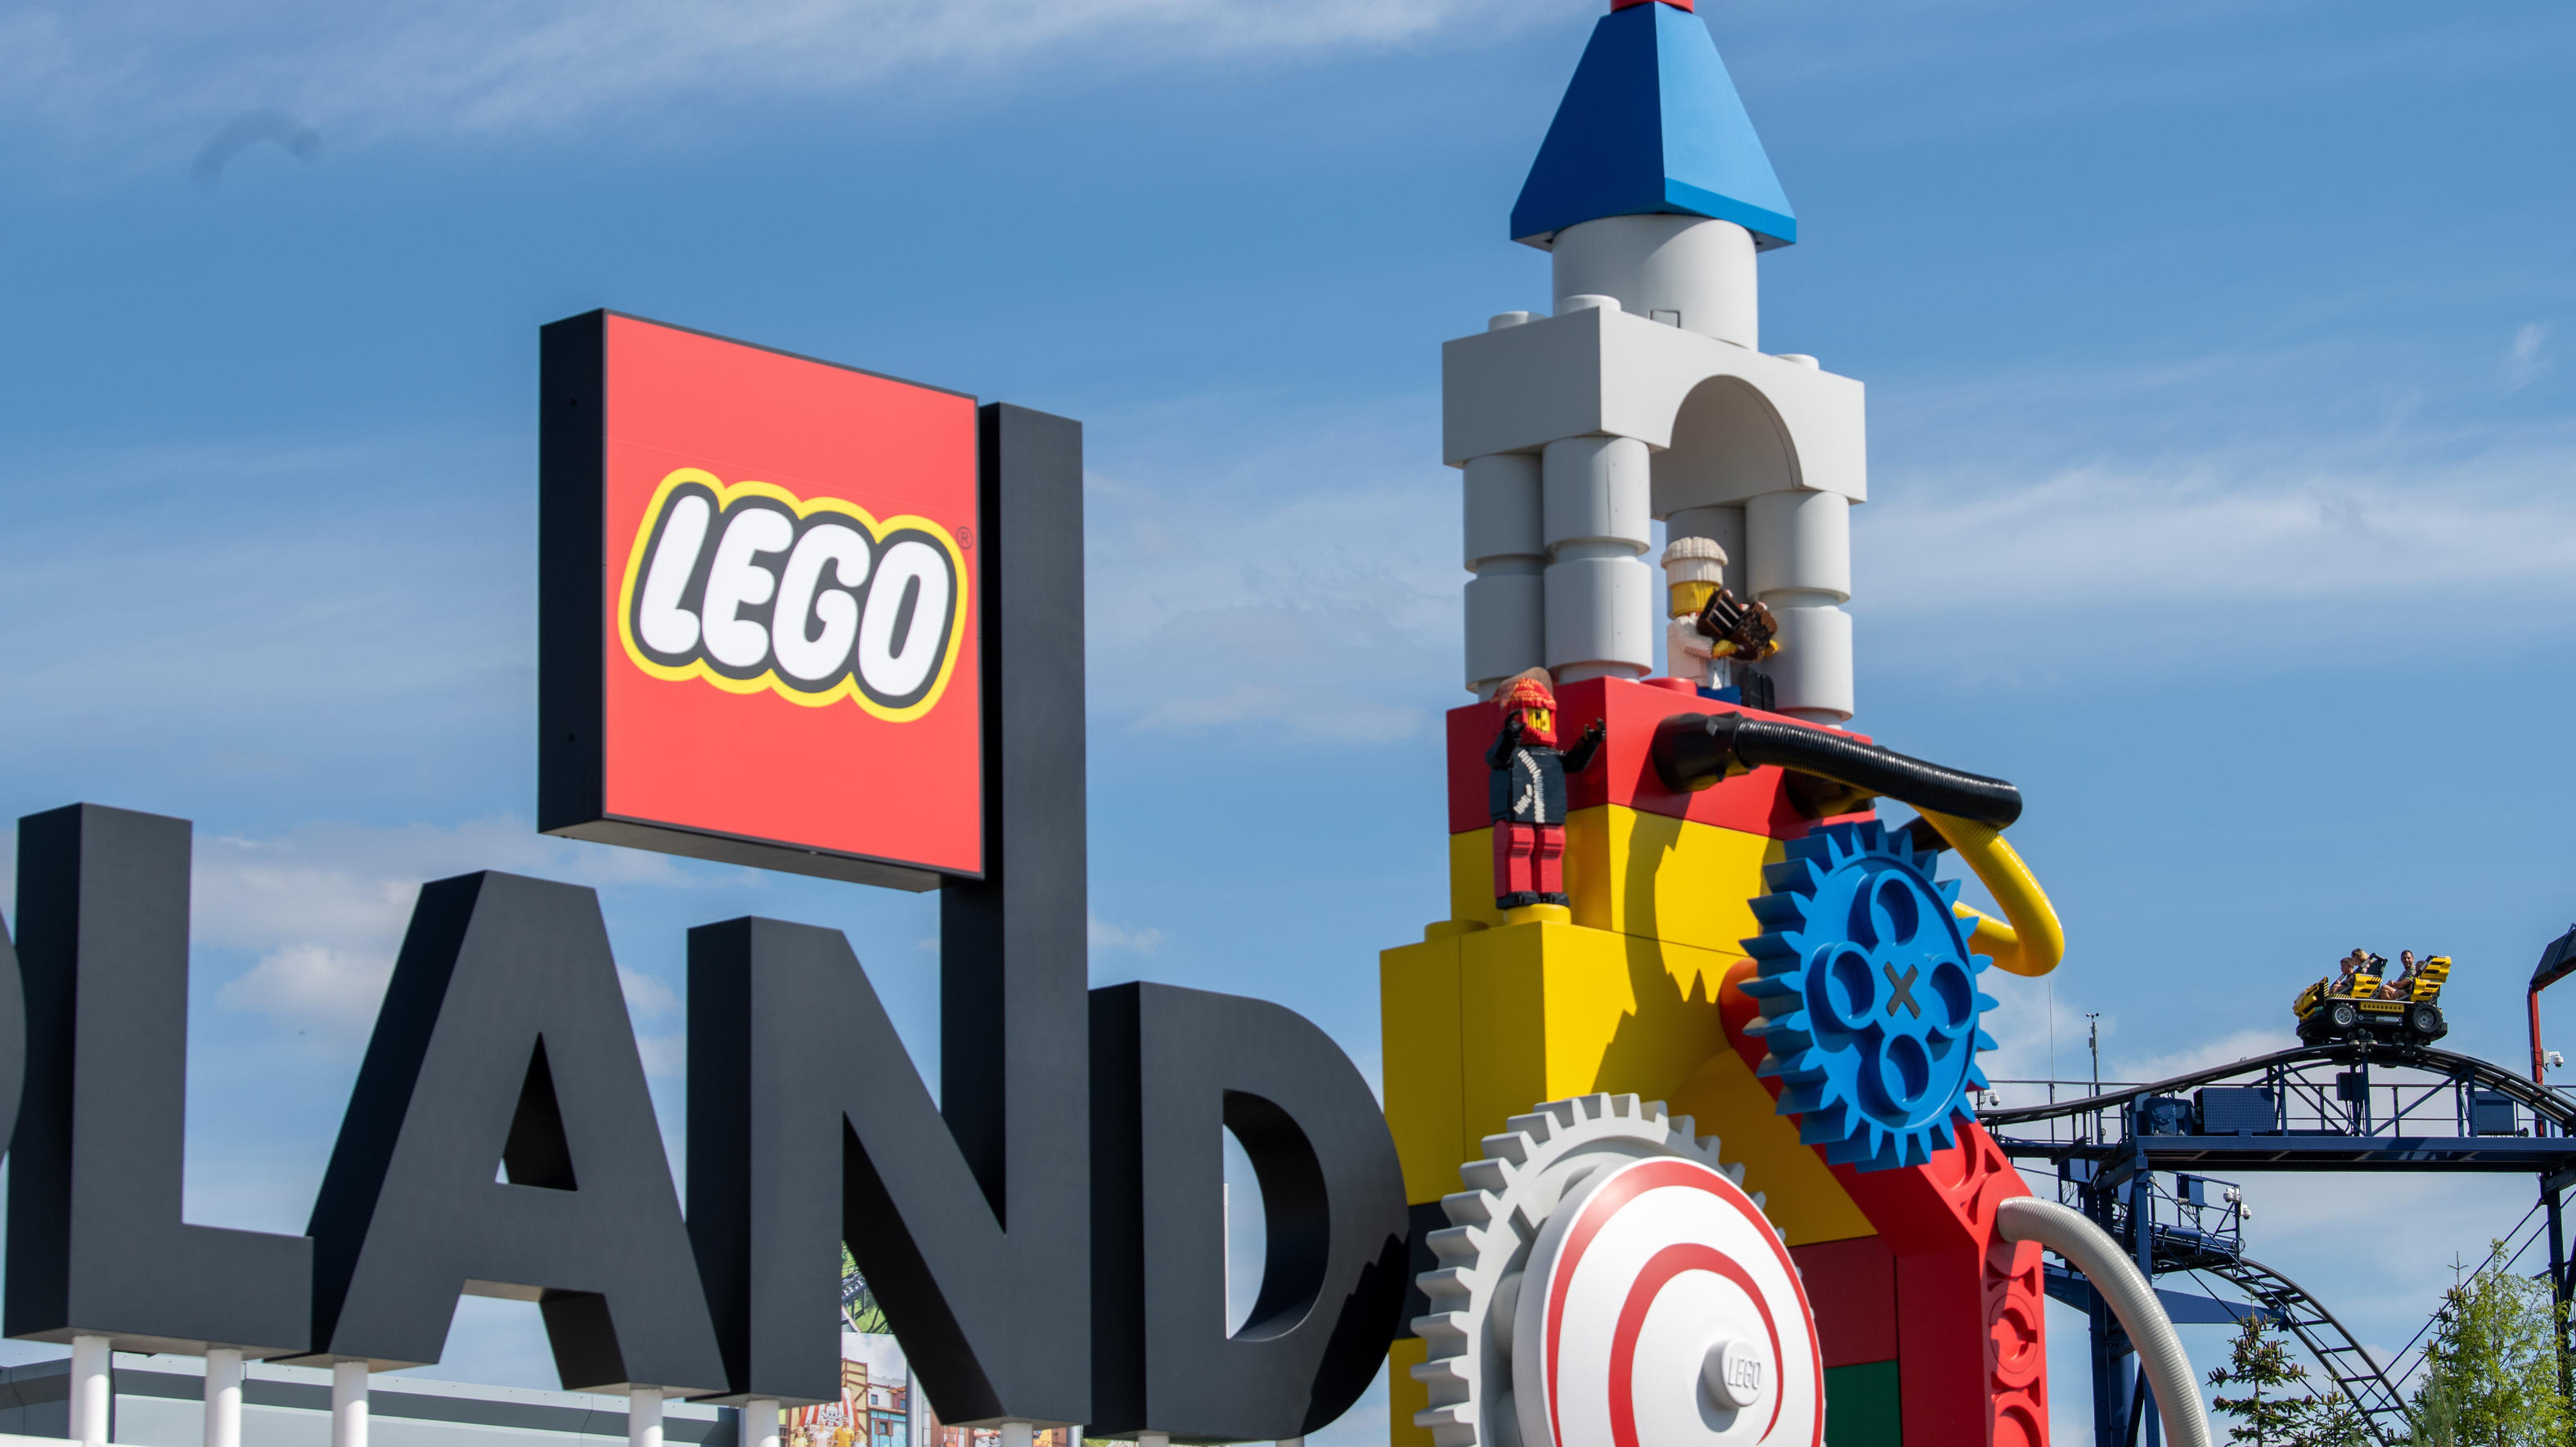 Neben dem Logo am Eingang zum Legoland ist eine Achterbahn zu sehen. Bei dem Unfall auf einer Achterbahn im Legoland im schwäbischen Günzburg sind mindestens 34 Menschen verletzt worden, zwei davon schwer.